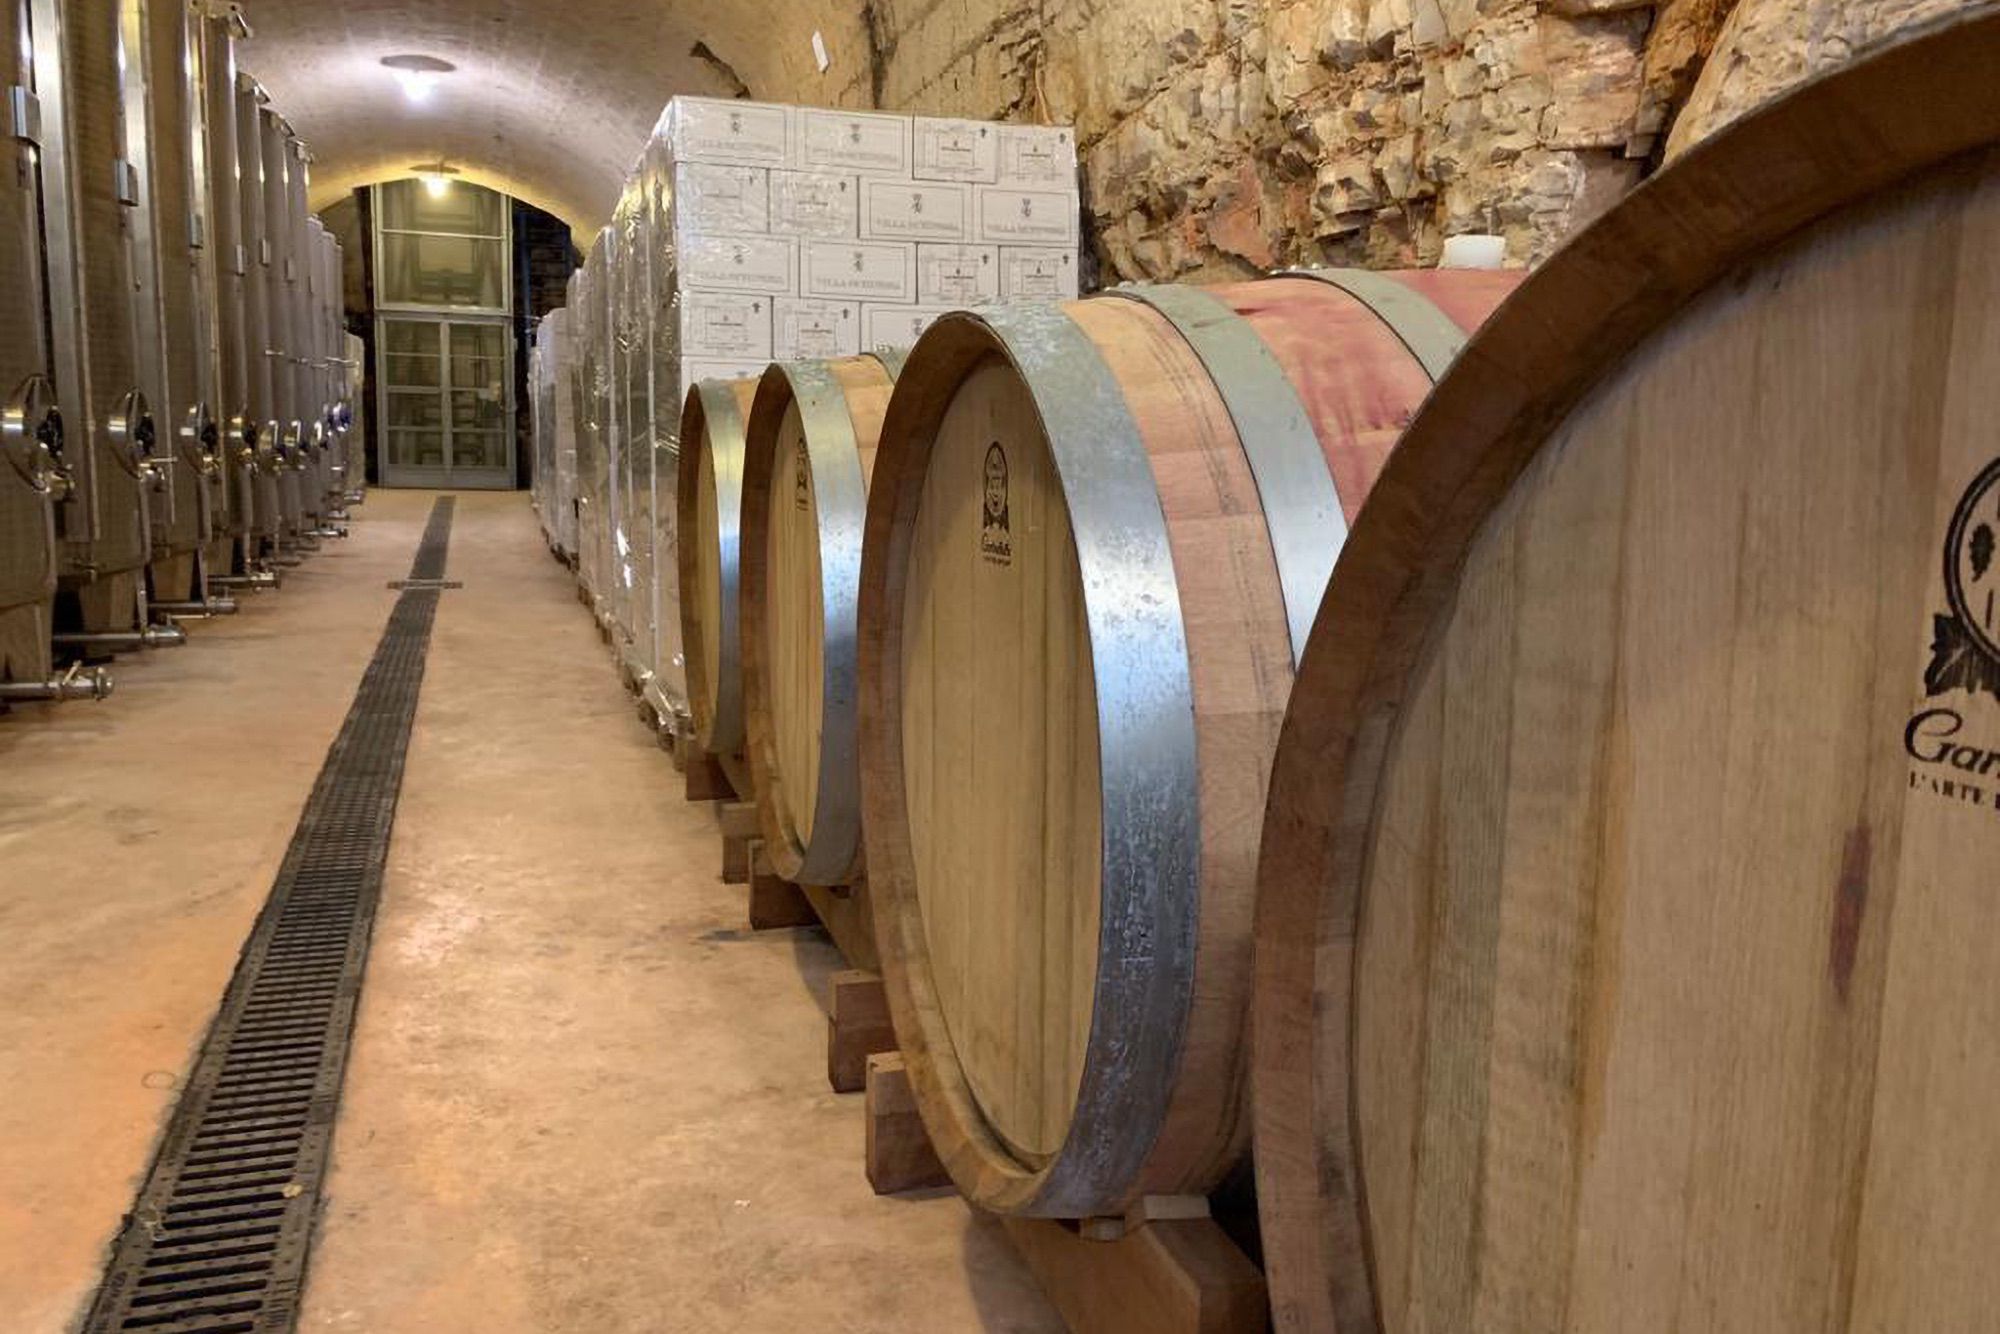 Roscato Moscato – Grand Wine Cellar